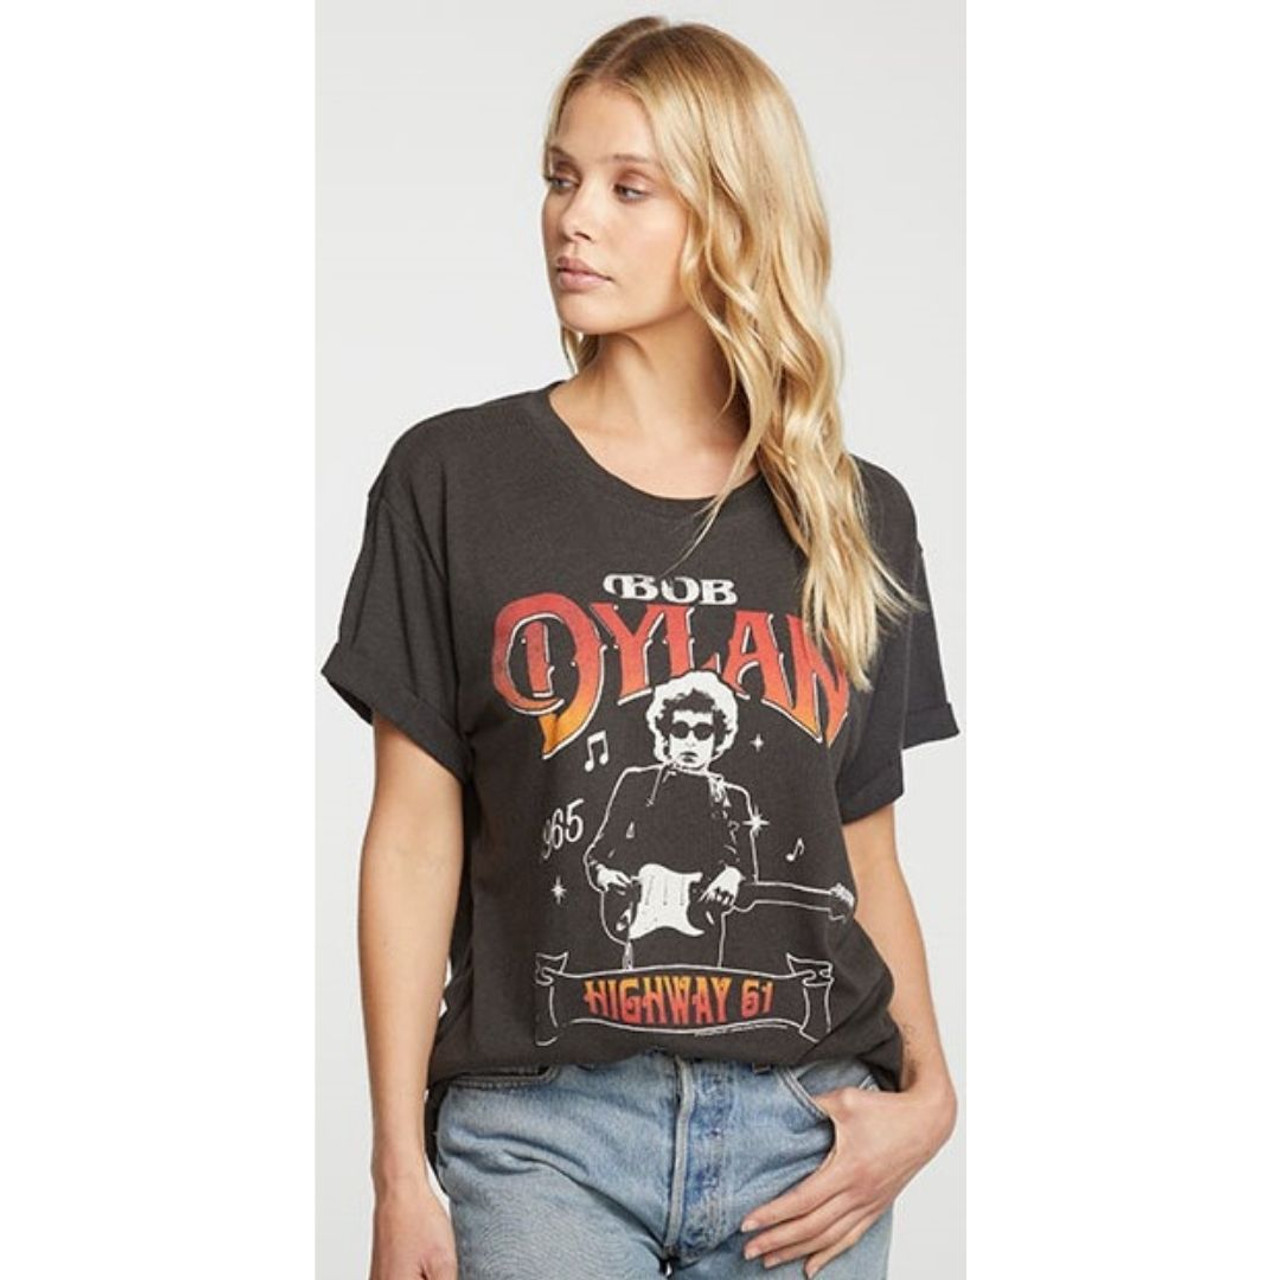 sandsynlighed dominere umoral Bob Dylan Women's Vintage T-shirt by Chaser - Highway 61